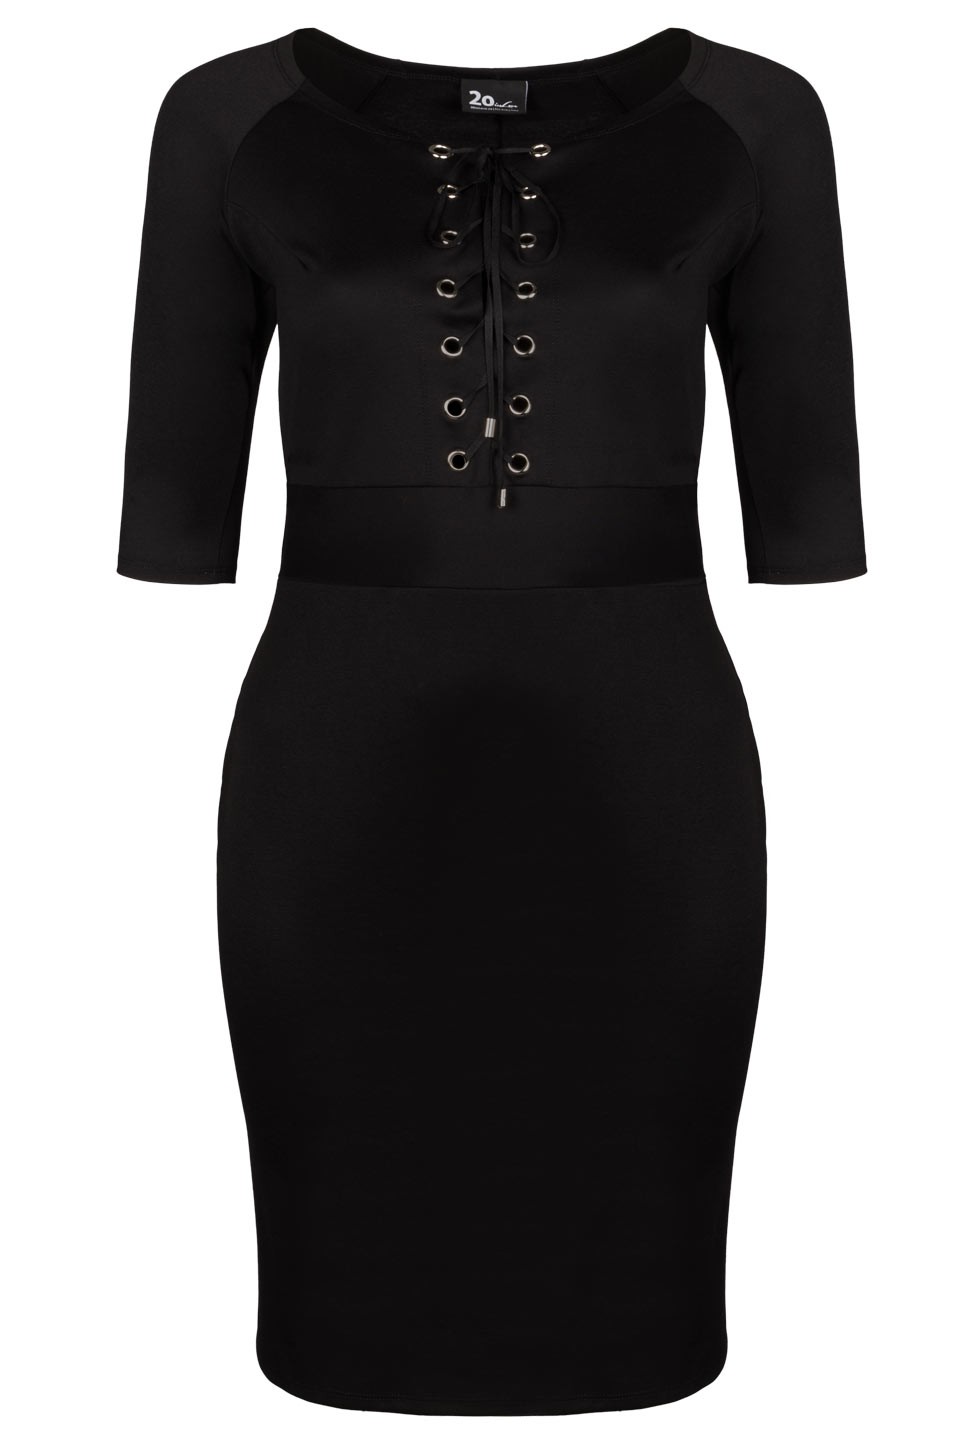 AISHA BLACK sukienka plus size z wiązanym dekoltem